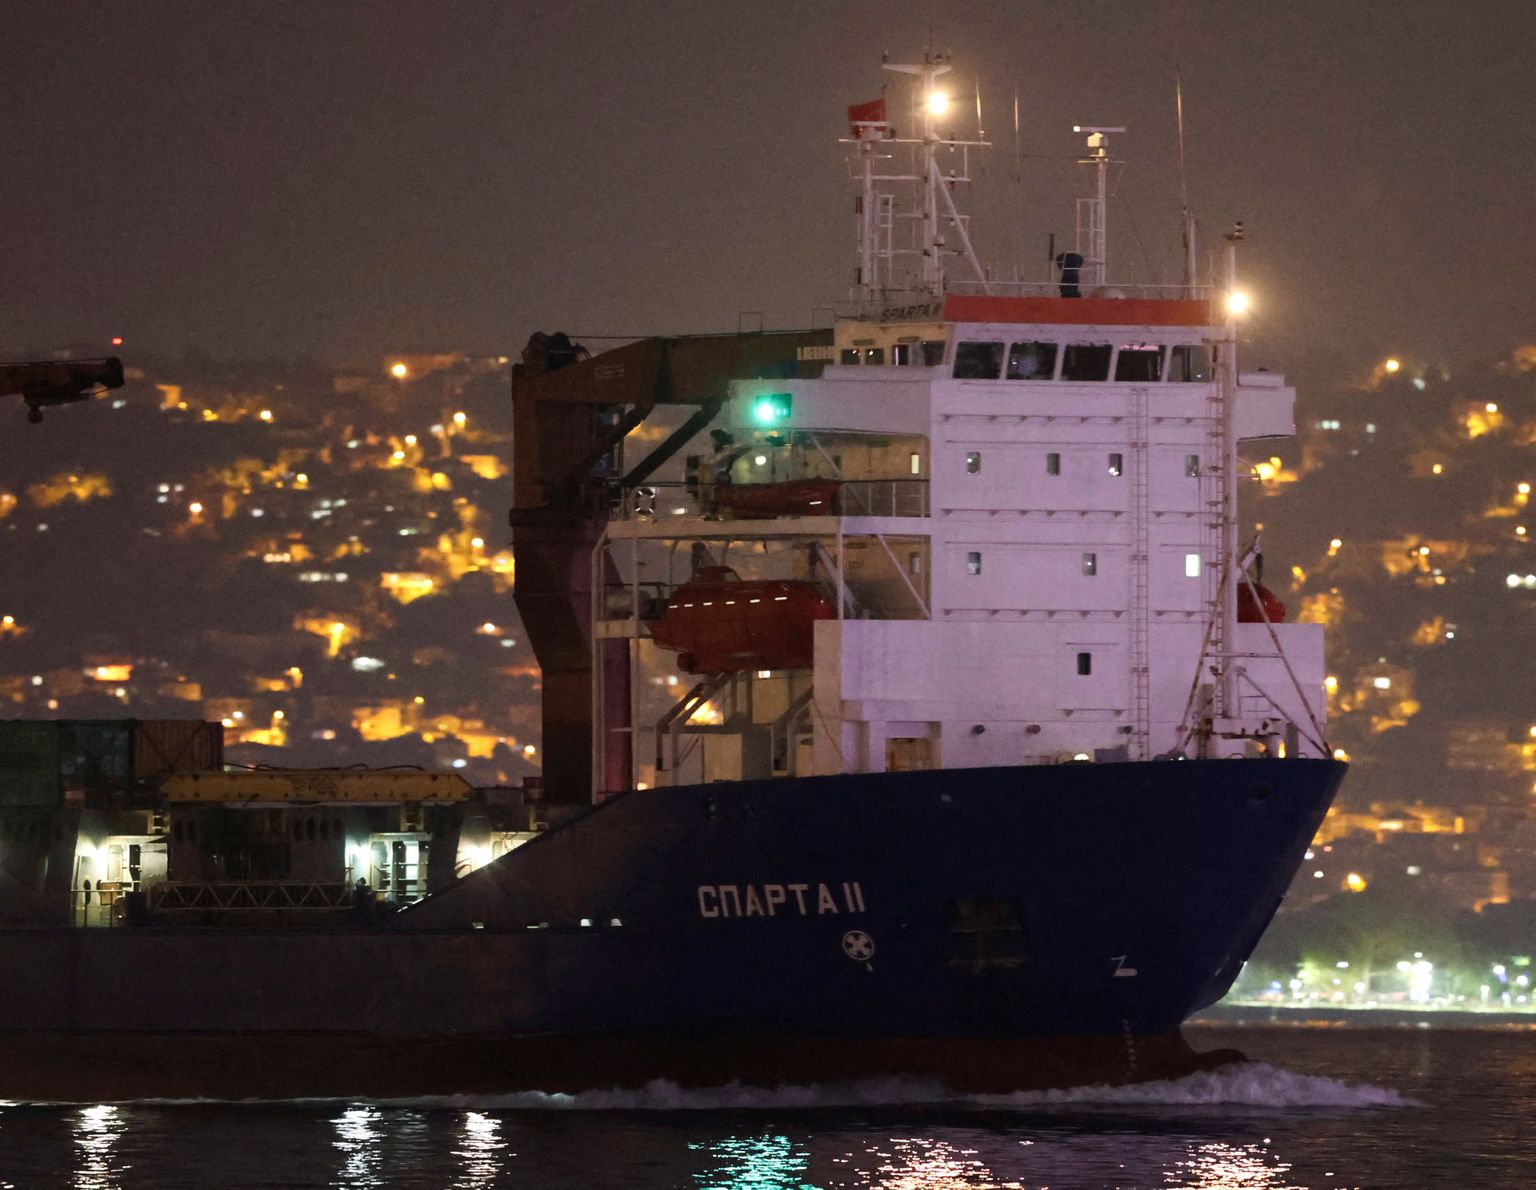 Vene kaubalaev Sparta II läbis Bosporuse väina Istanbulis 14. augustil 2022. REUTERS/Yoruk Isik